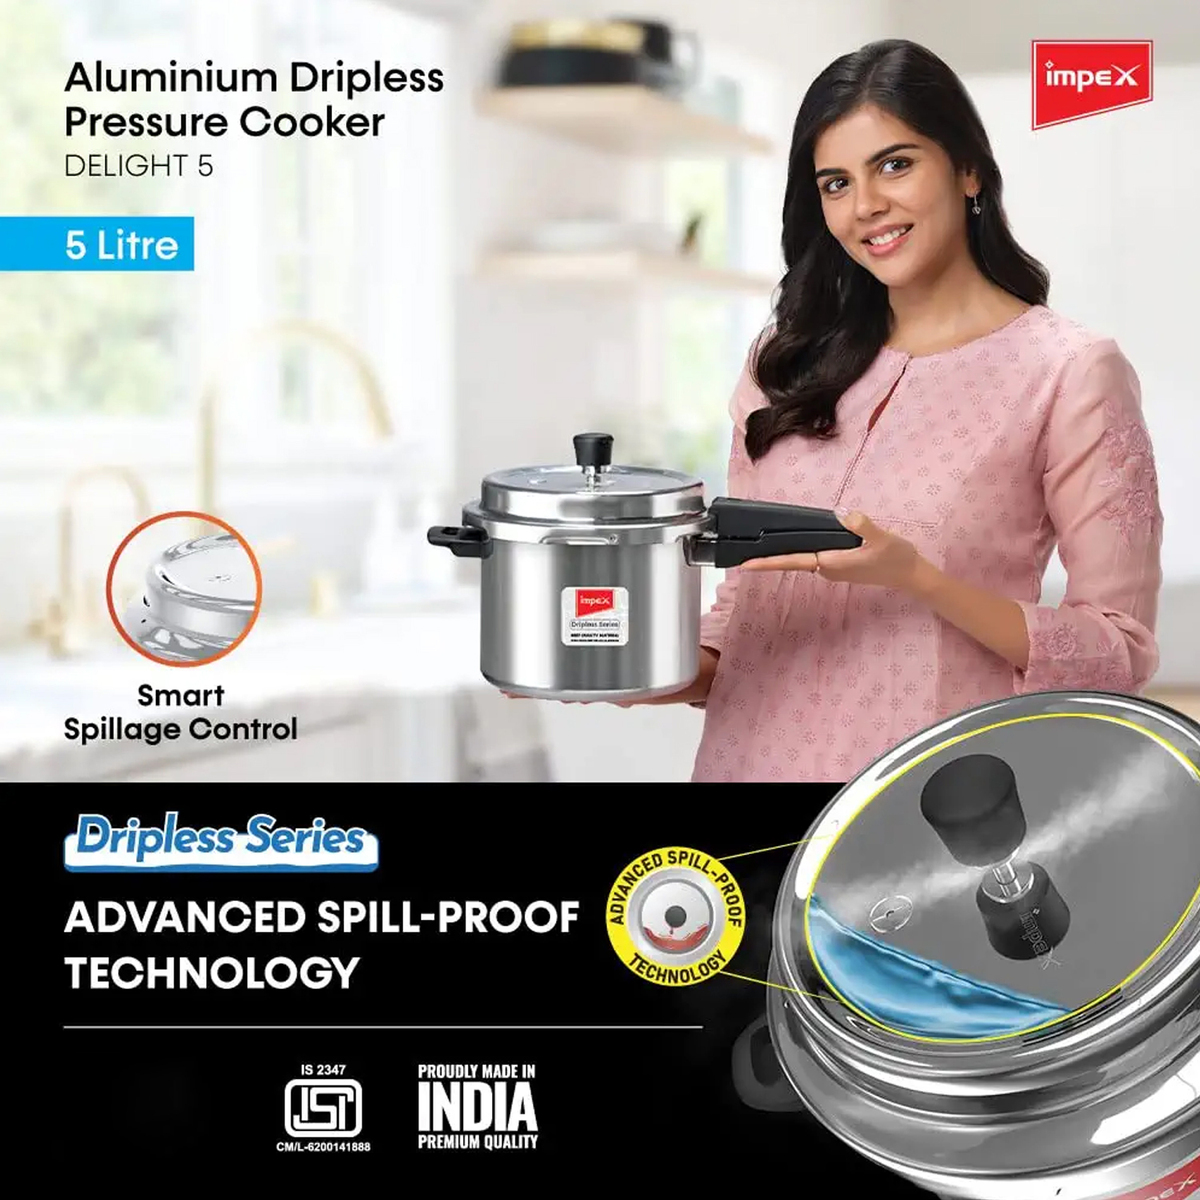 Impex Aluminium Dripless Pressure Cooker IB 5L